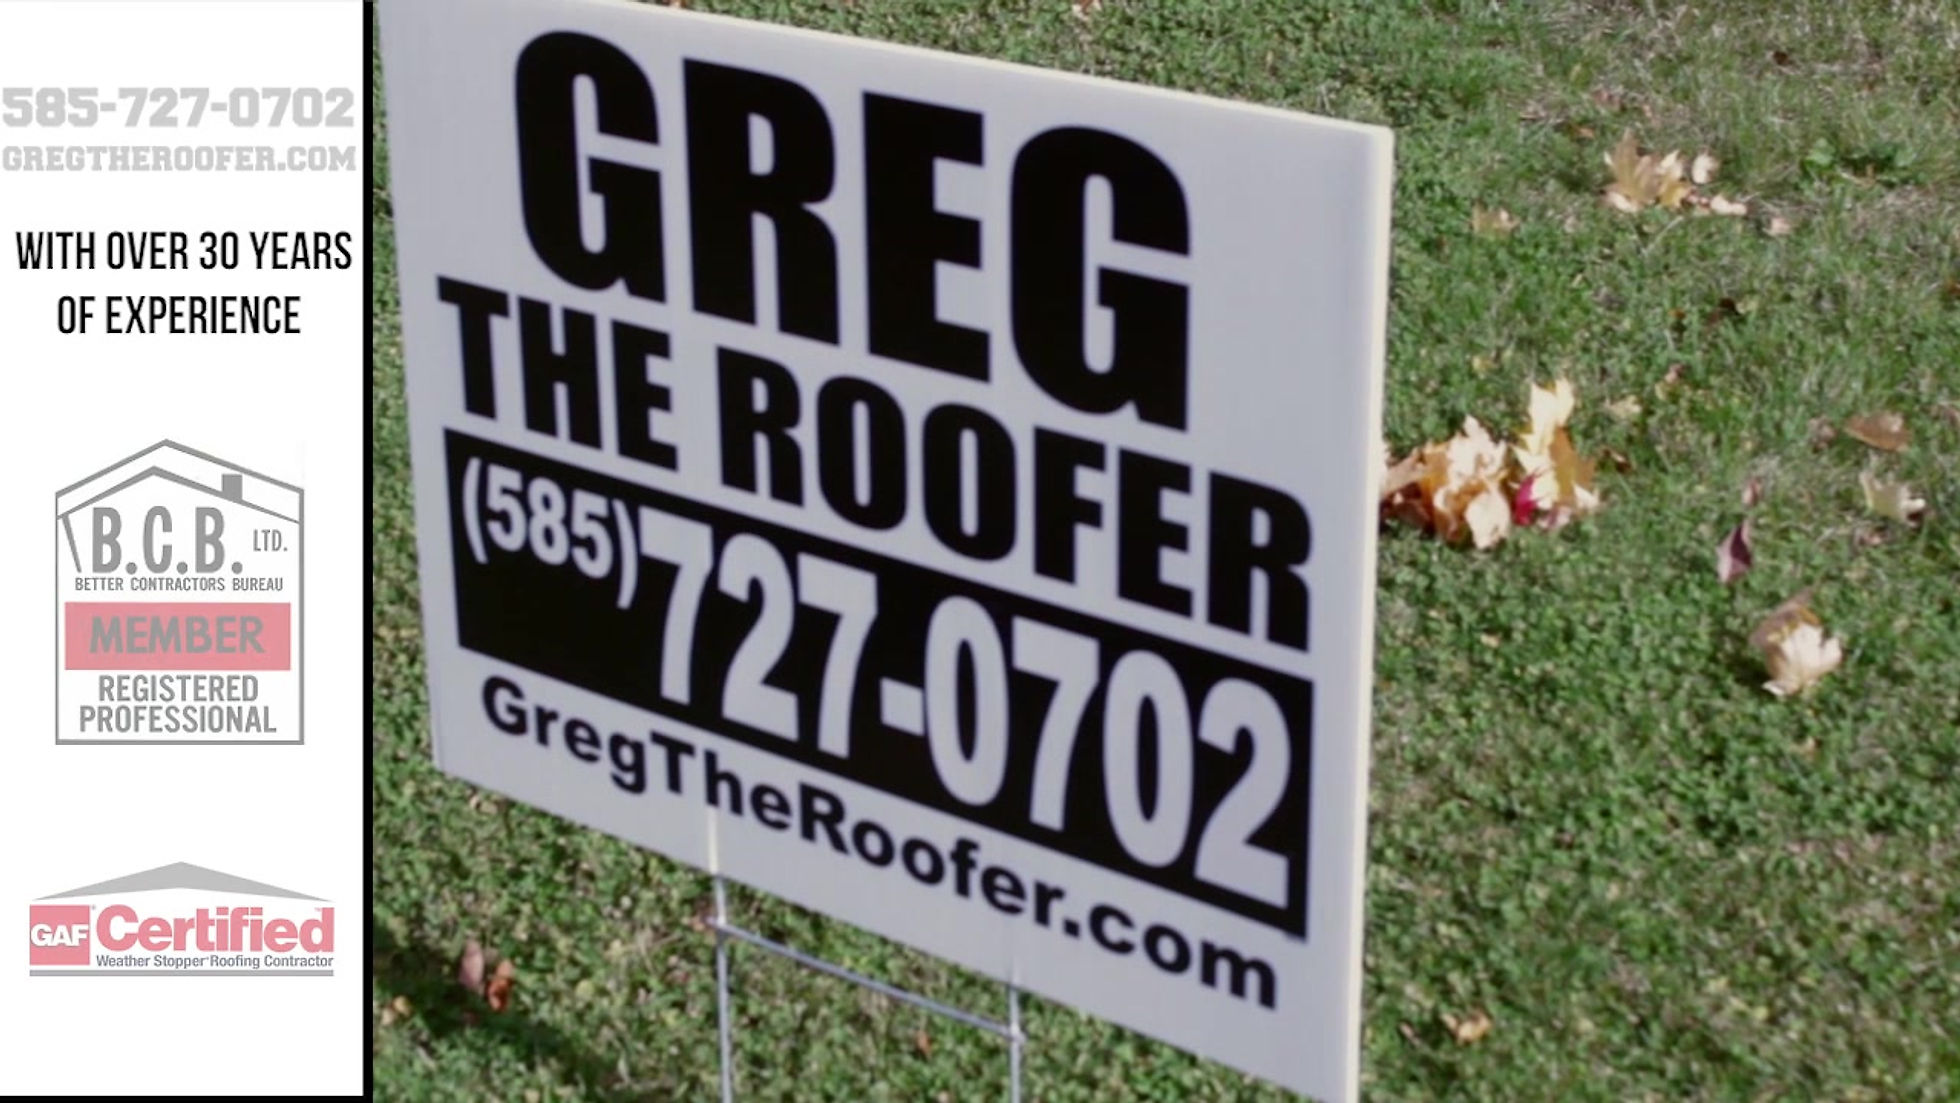 Greg the roofer